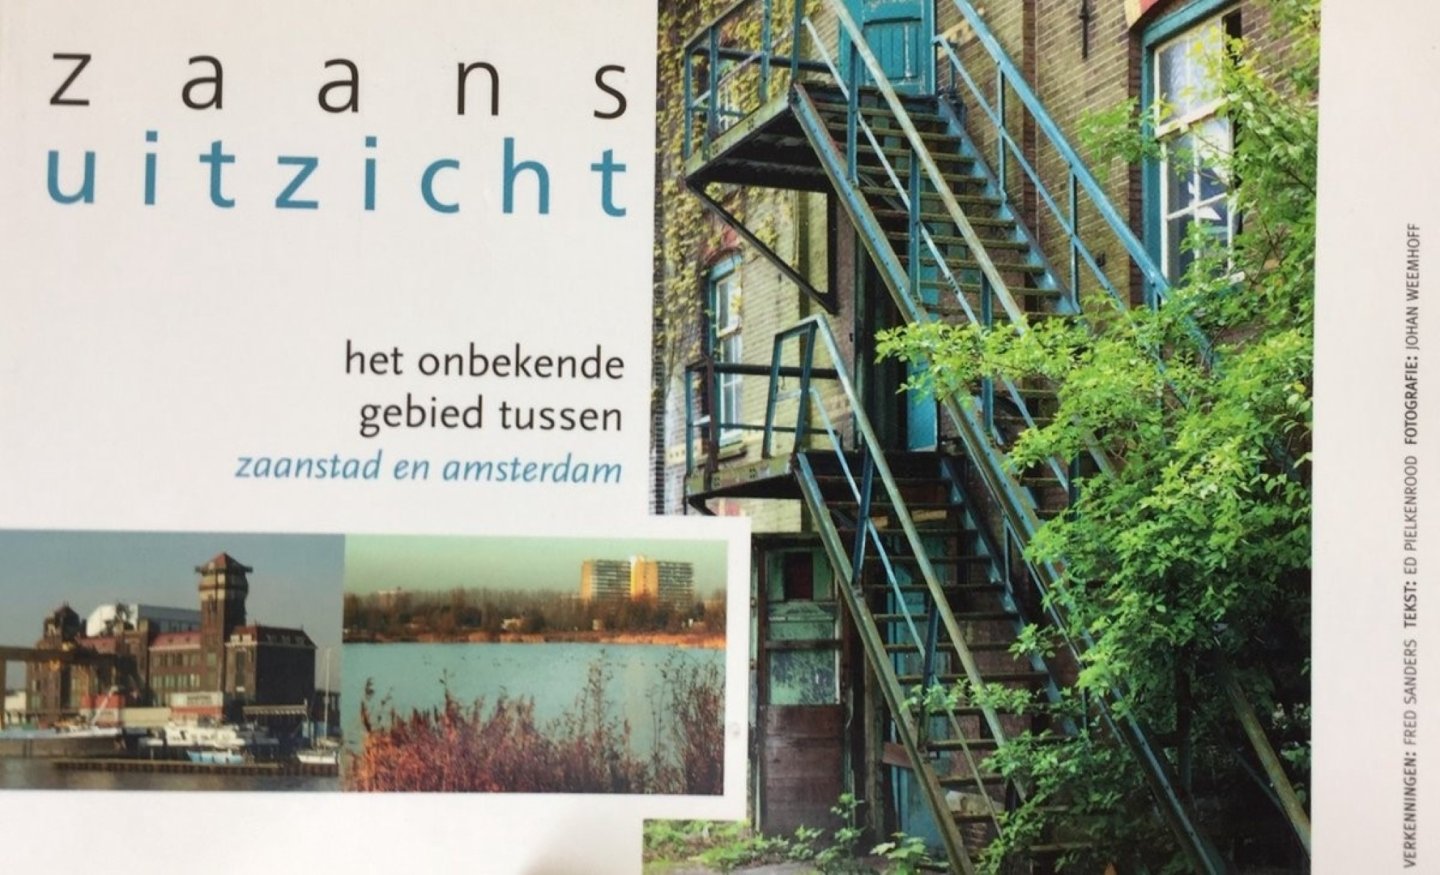 Pielkenrood, Ed/ Weemhoff, J. (fotografie) - Zaans uitzicht Het onbekende gebied tussen Zaanstad en Amsterdam